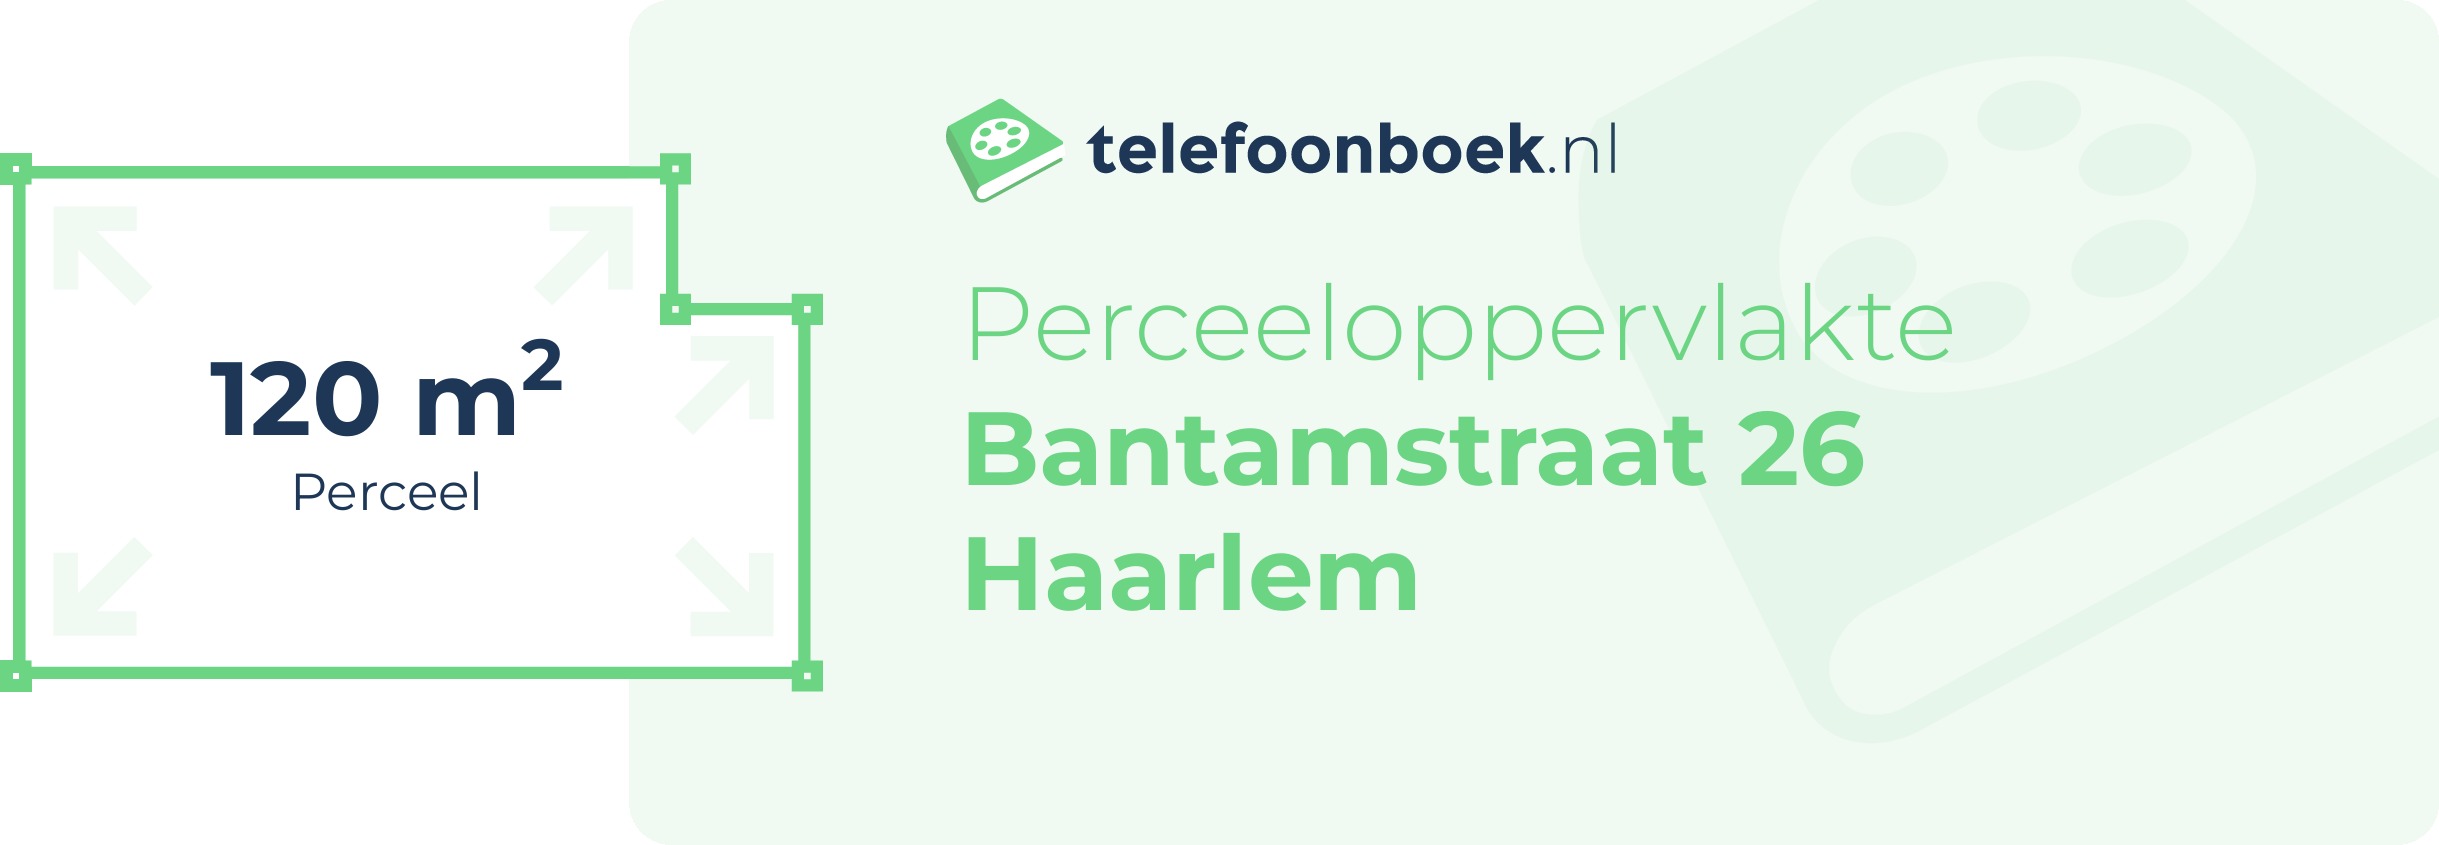 Perceeloppervlakte Bantamstraat 26 Haarlem